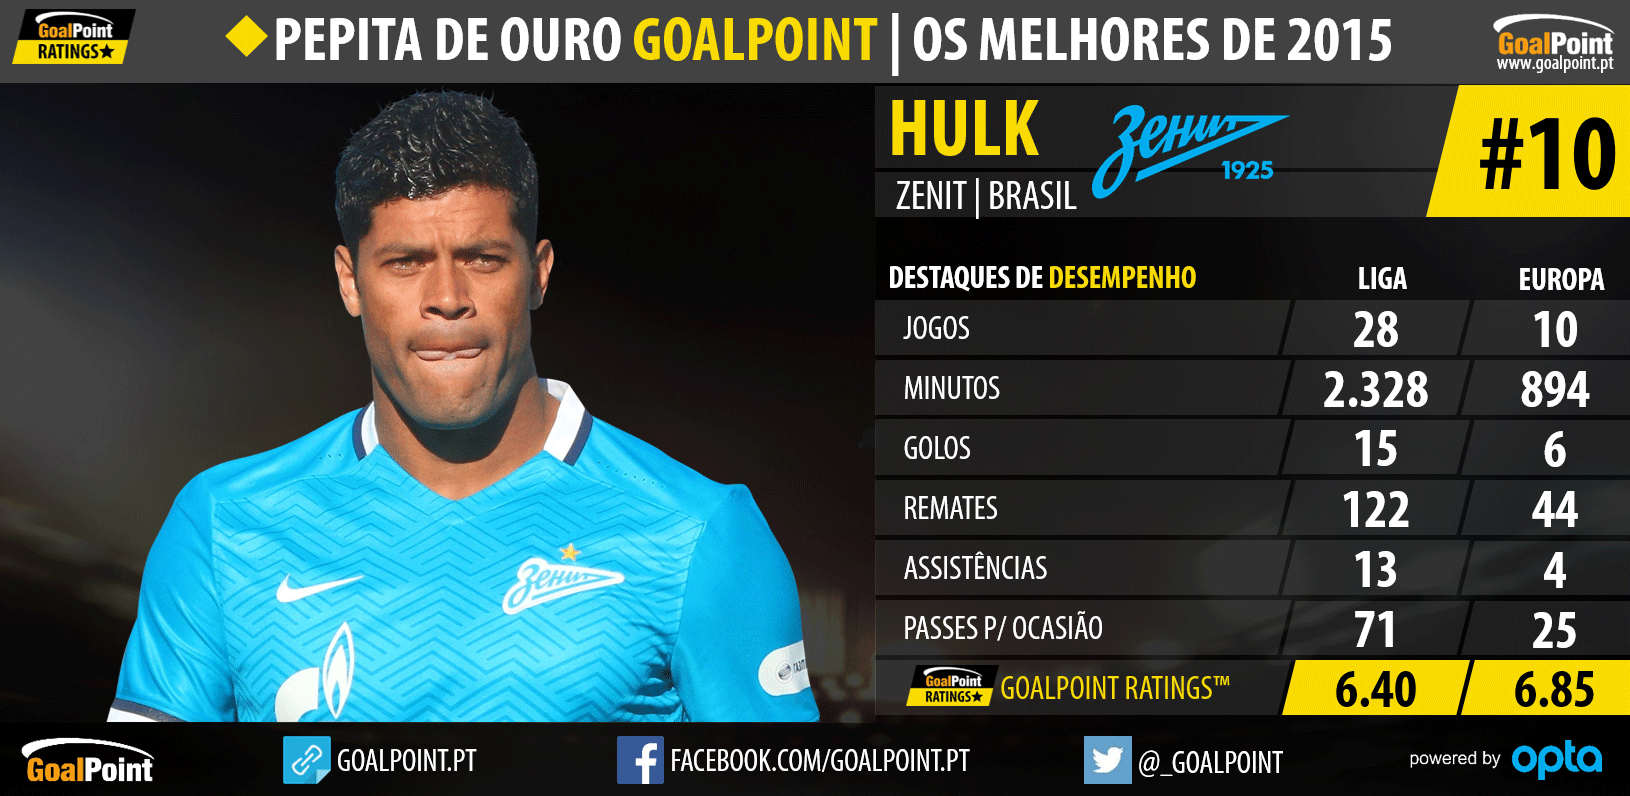 Pepita de Ouro GoalPoint™ 2015: Os melhores do Mundo - Hulk